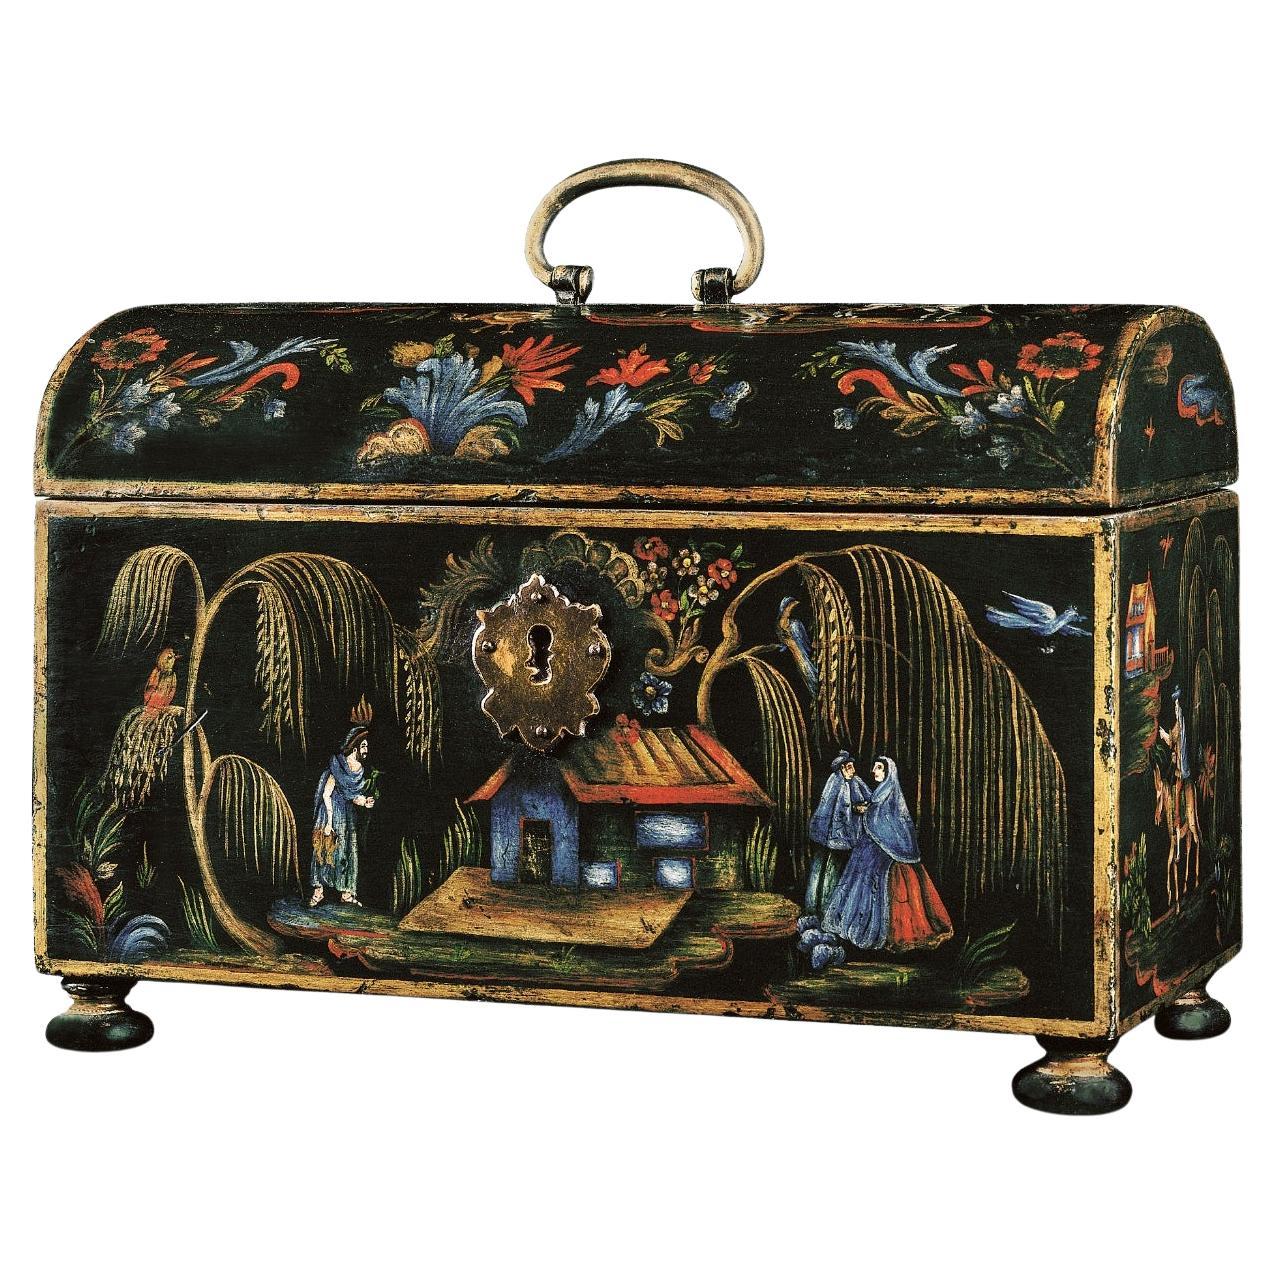 Petit coffre Manila d'inspiration du XVIIIe siècle peint à la main et d'influence orientale